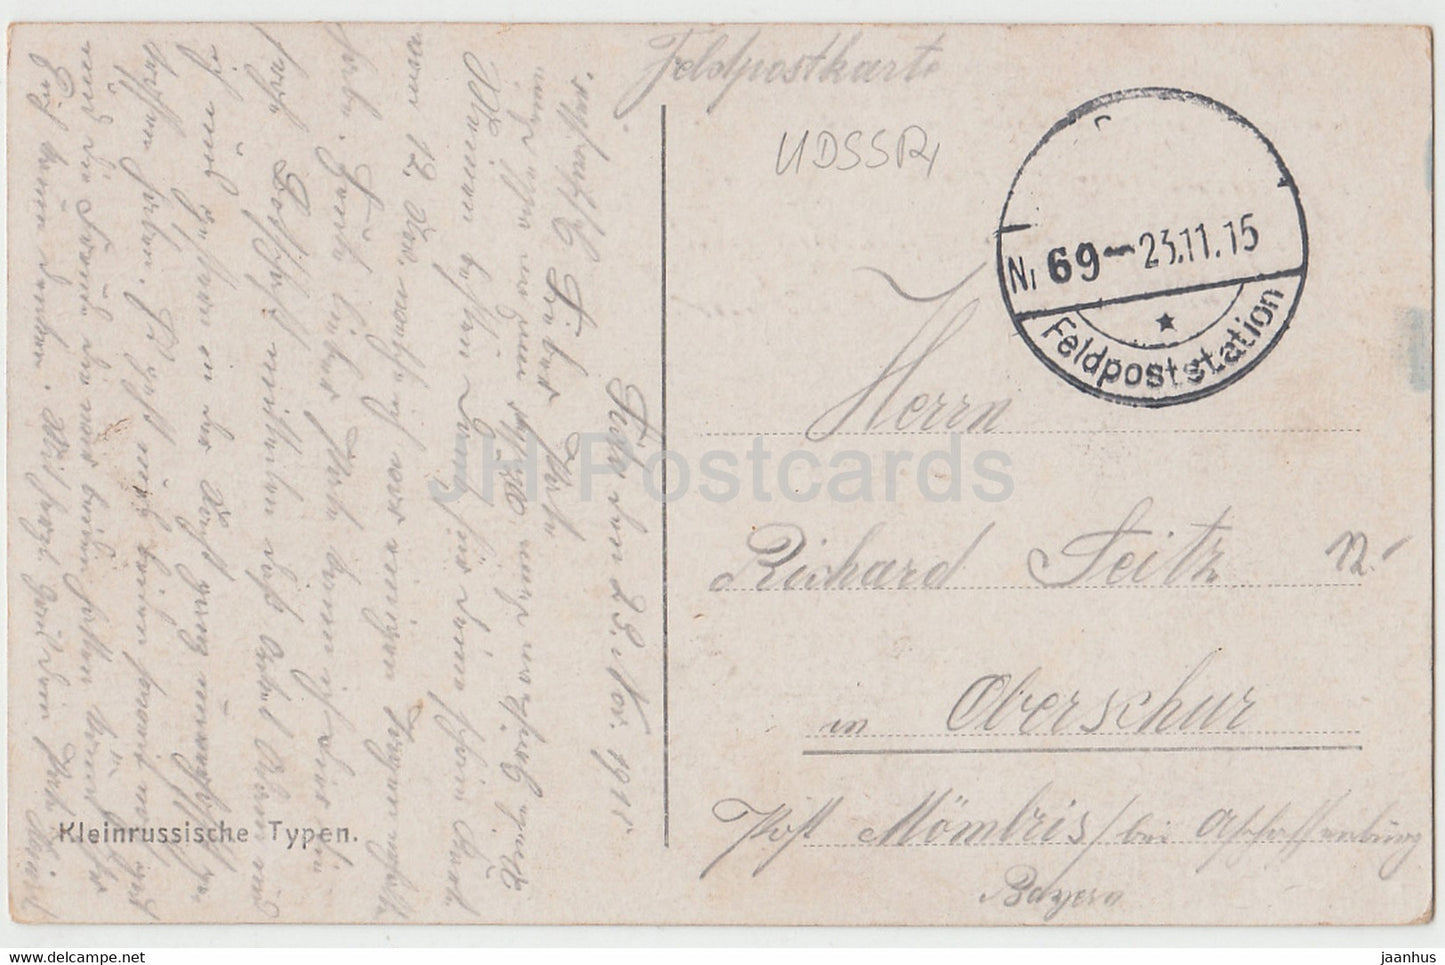 Kleinrussische Typen - windmill - Feldpost - old postcard - 1915 - Ukraine - used